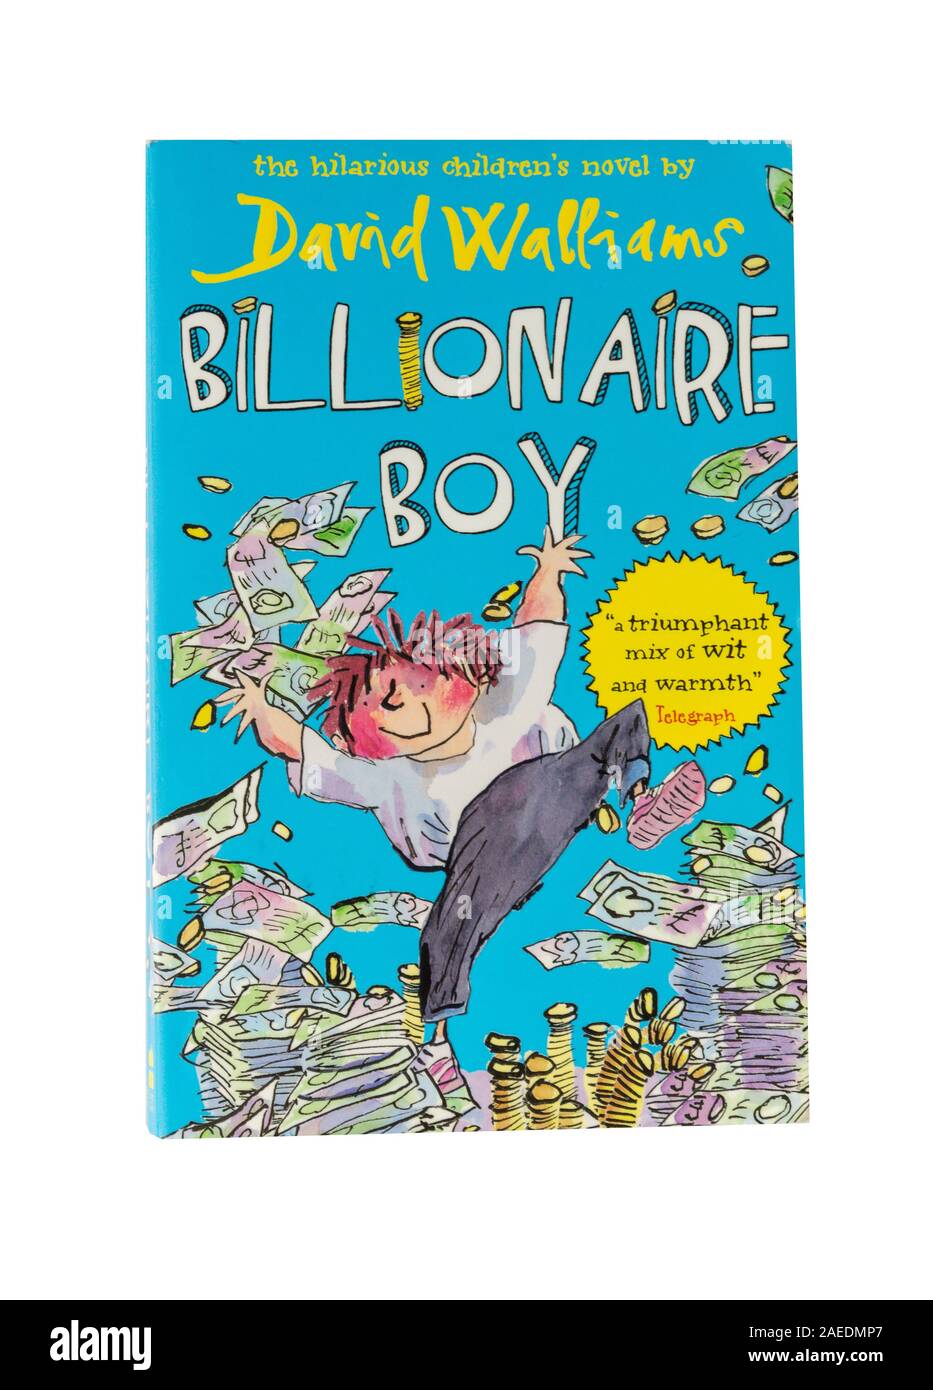 David Walliams multimillonario 'niño' libro de niños, Greater London, England, Reino Unido Foto de stock